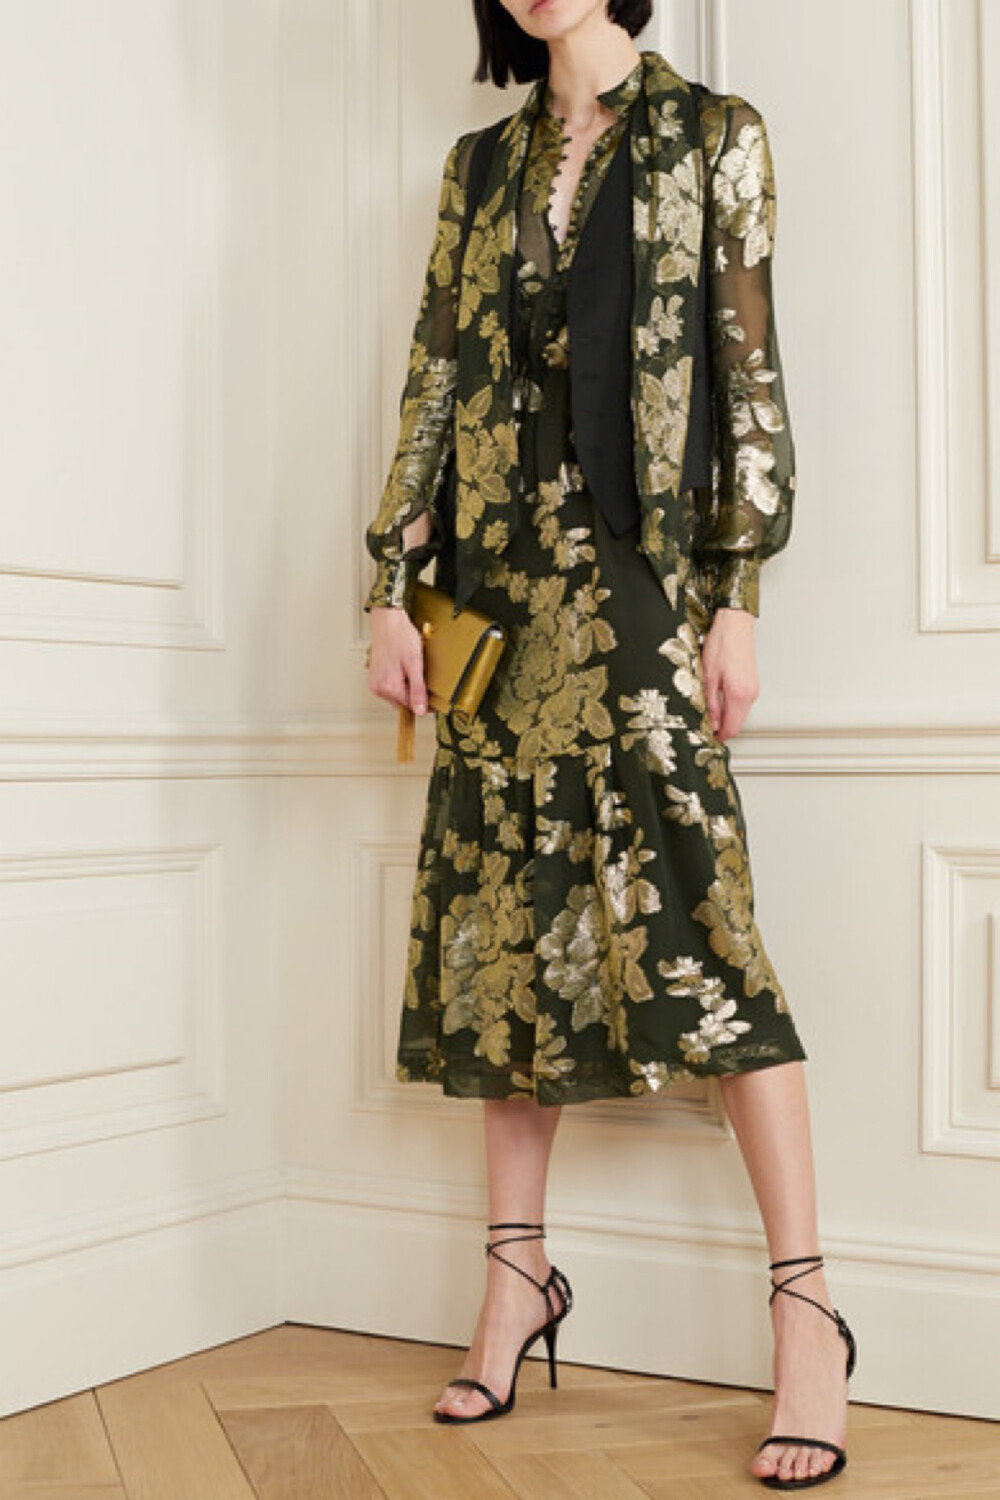 
华丽无可抵挡，优雅难以复加，SAINT LAURENT 这款中长连衣裙实为品牌 2020 春夏系列中的亮眼焦点。它裁自黑色真丝混纺雪纺绸，衣身嵌有金色花卉刺绣图案，致敬了创始人 Yves Saint Laurent 于 1976 年设计的 “Russian” 系列。建议解开领口系带和纽扣，以更加轻松的方式演绎不费力的时尚。
